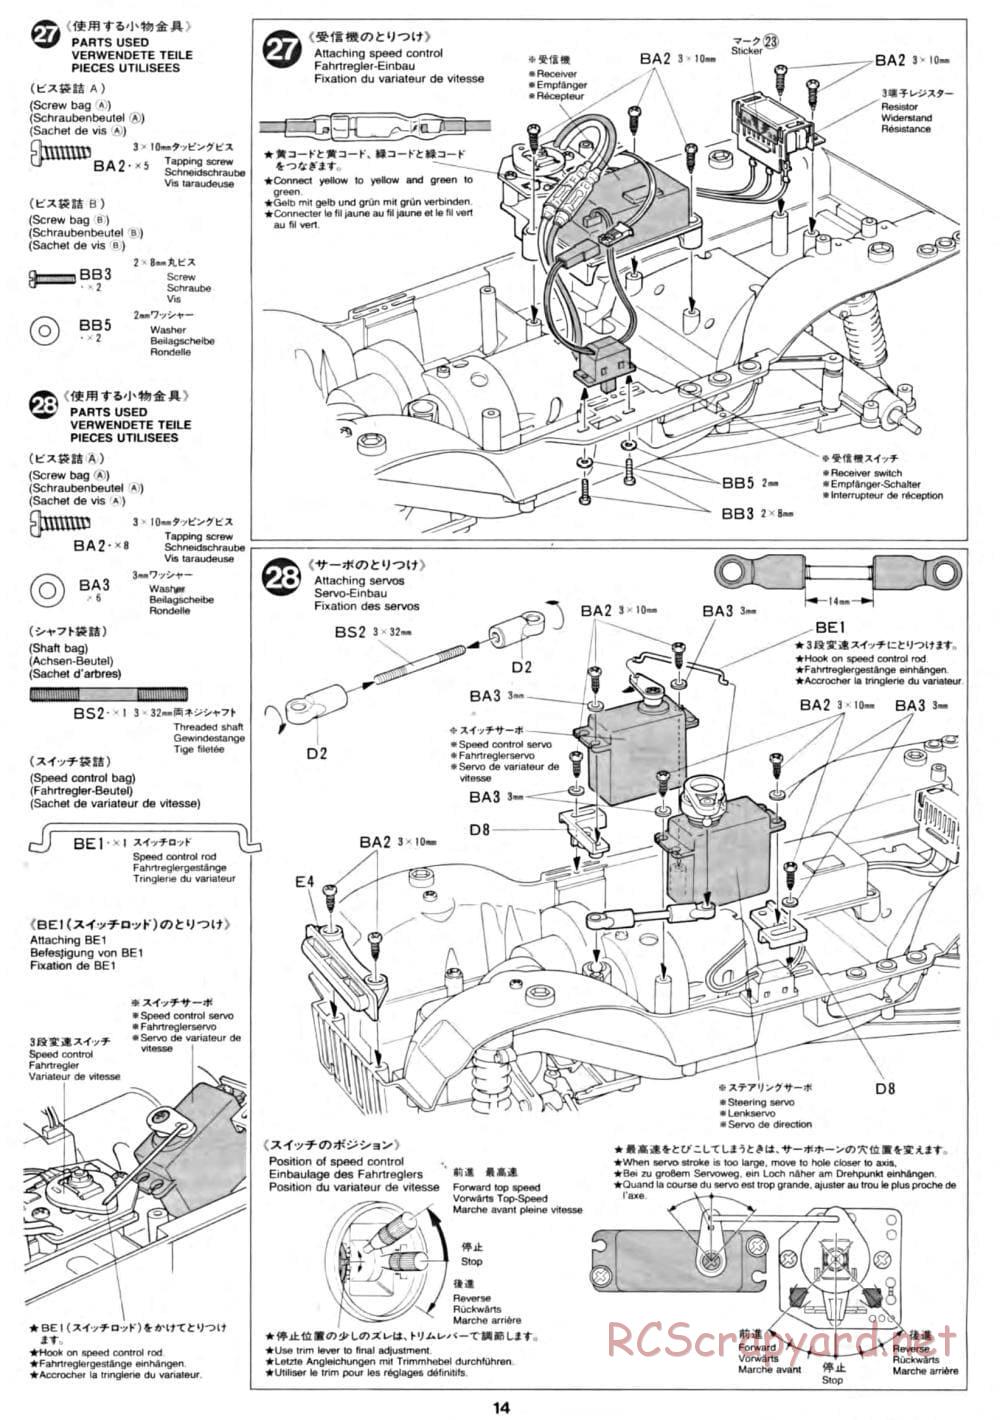 Tamiya - CC-01 Chassis - Manual - Page 14